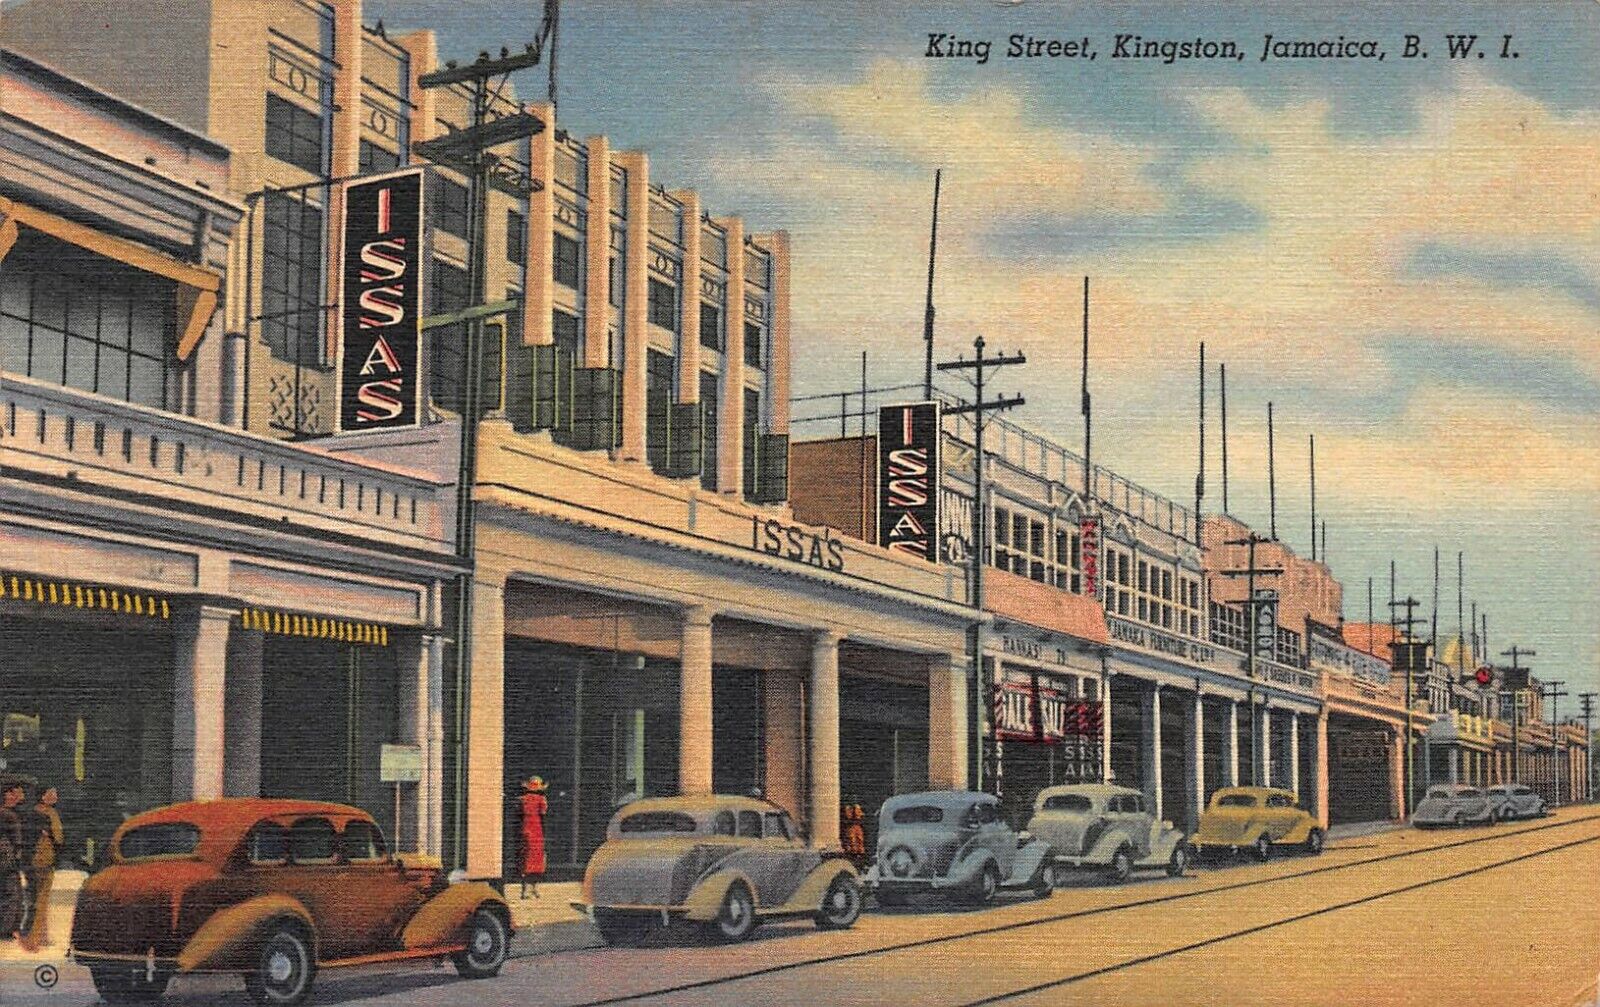 King Street, Kingston, Jamaica, British West Indies, 1939 Postcard, Used